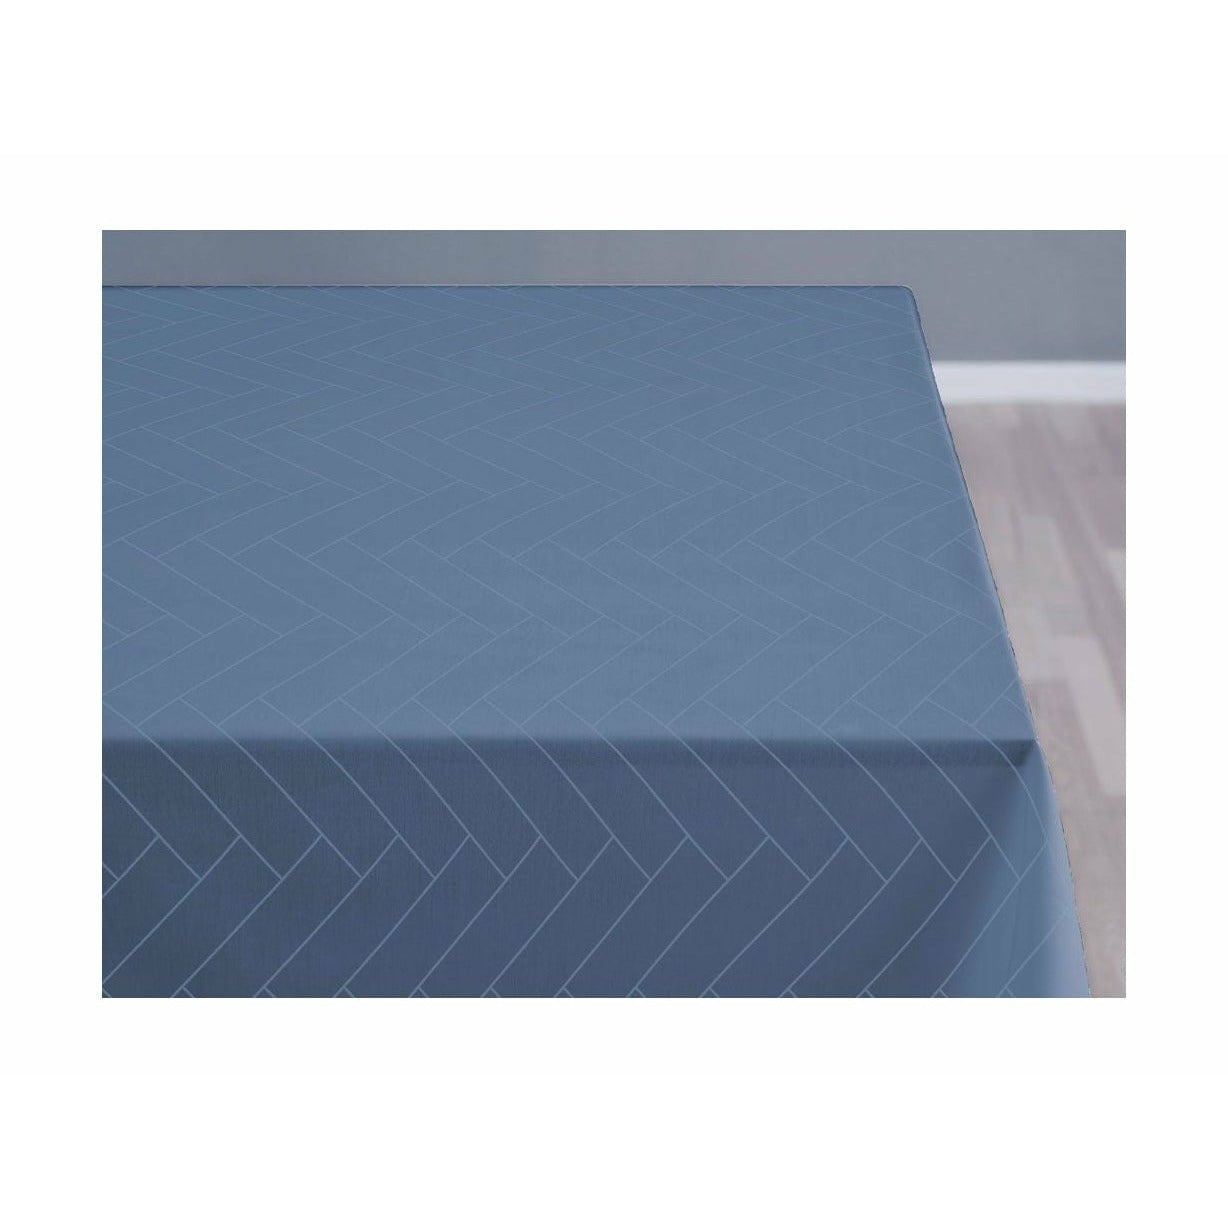 Comprimés de carreaux de carreaux södahl 320x140 cm, bleu ciel